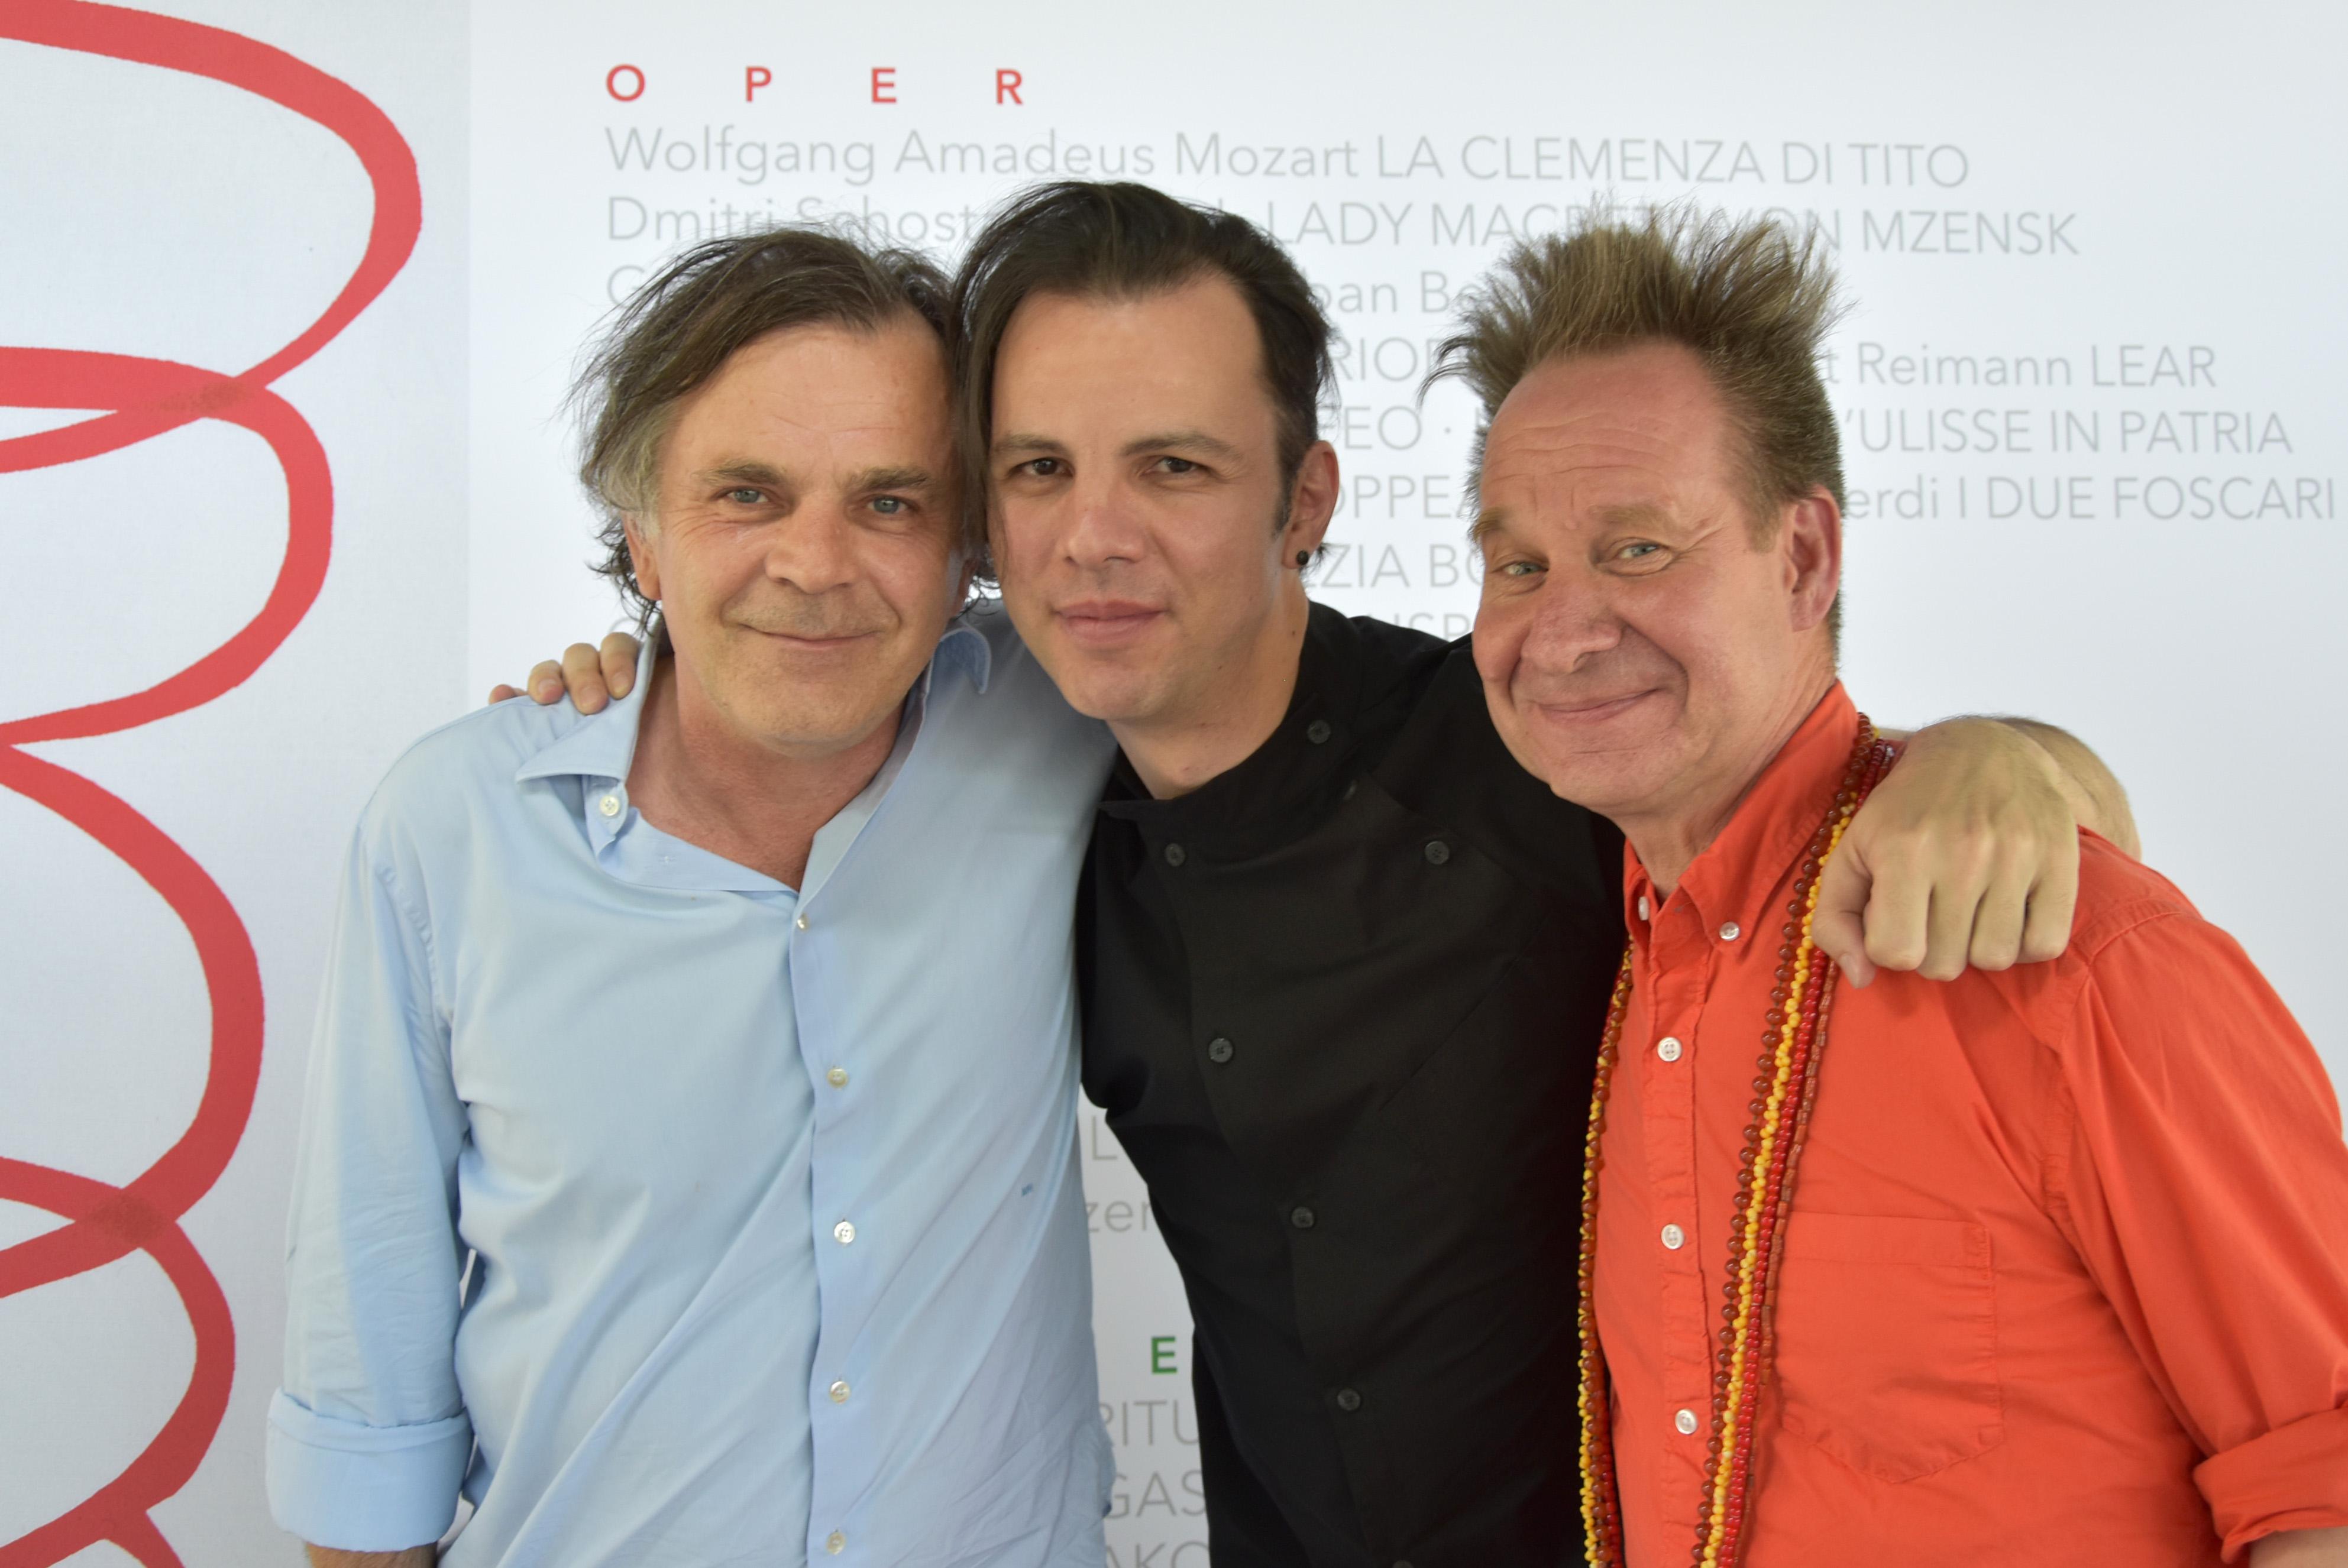 Από αριστερά: Ο διευθυντής του Φεστιβάλ του Ζάλτσμπουργκ, Markus Hinterhäuser, ο μαέστρος Θόδωρος Κουρεντζής και ο σκηνοθέτης Πίτερ Σέλαρς 